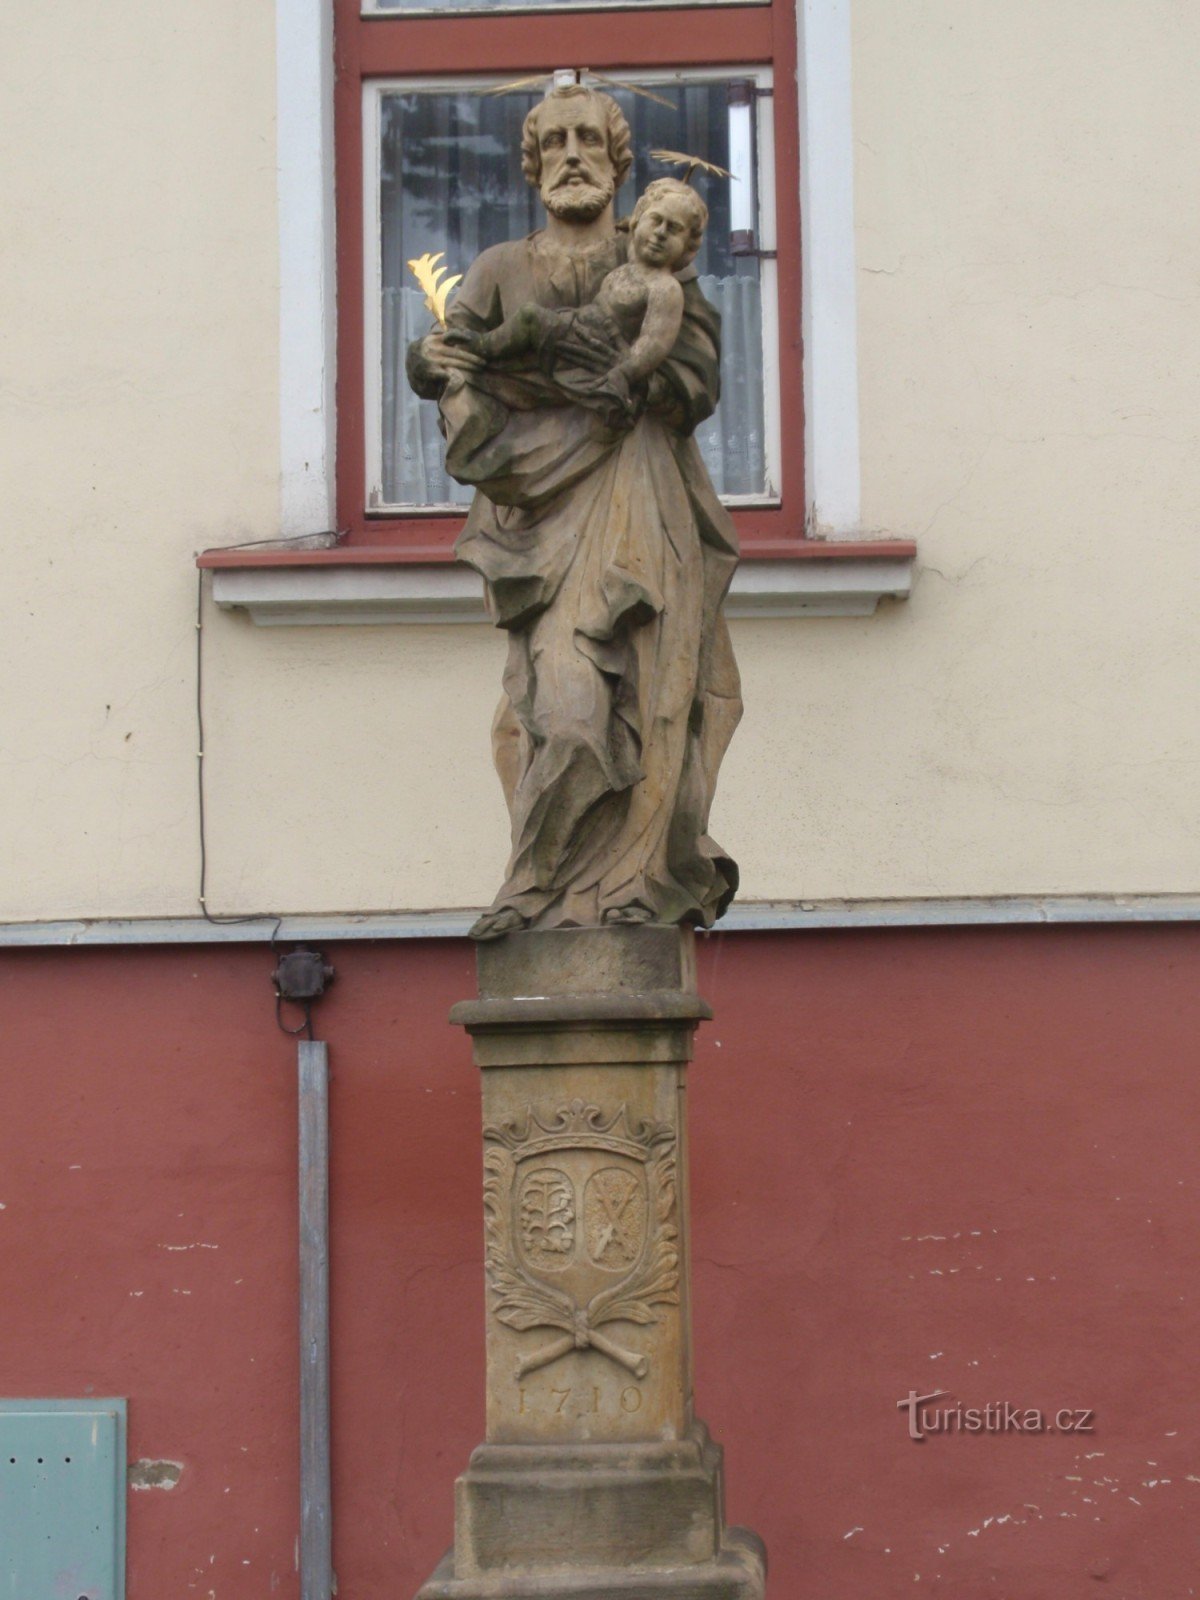 Barockskulpturen in Jevíček